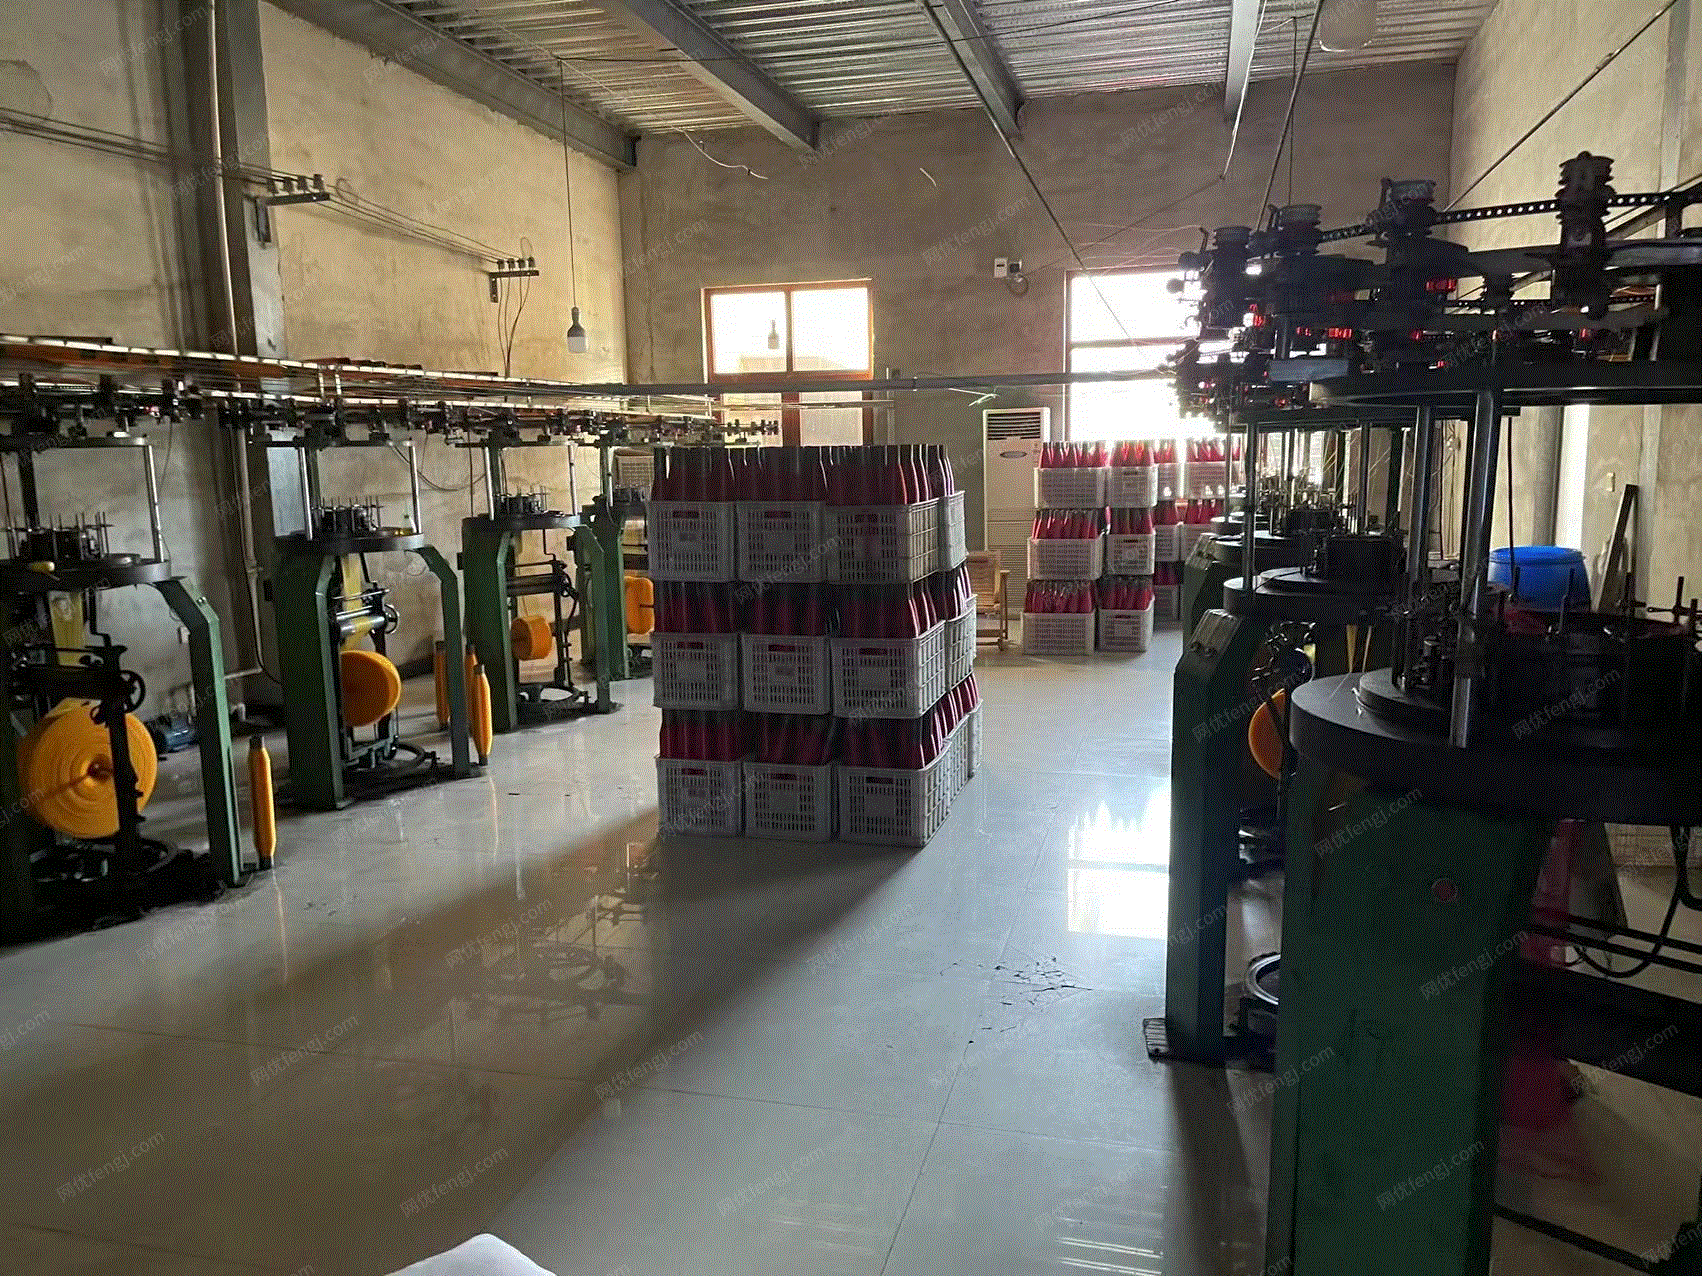 纺织公司处理圆织机13台、自动切缝机1台、五线、缝纫机3台、锁边机20台、打包机1台、气泵3台、气罐等编织设备整套